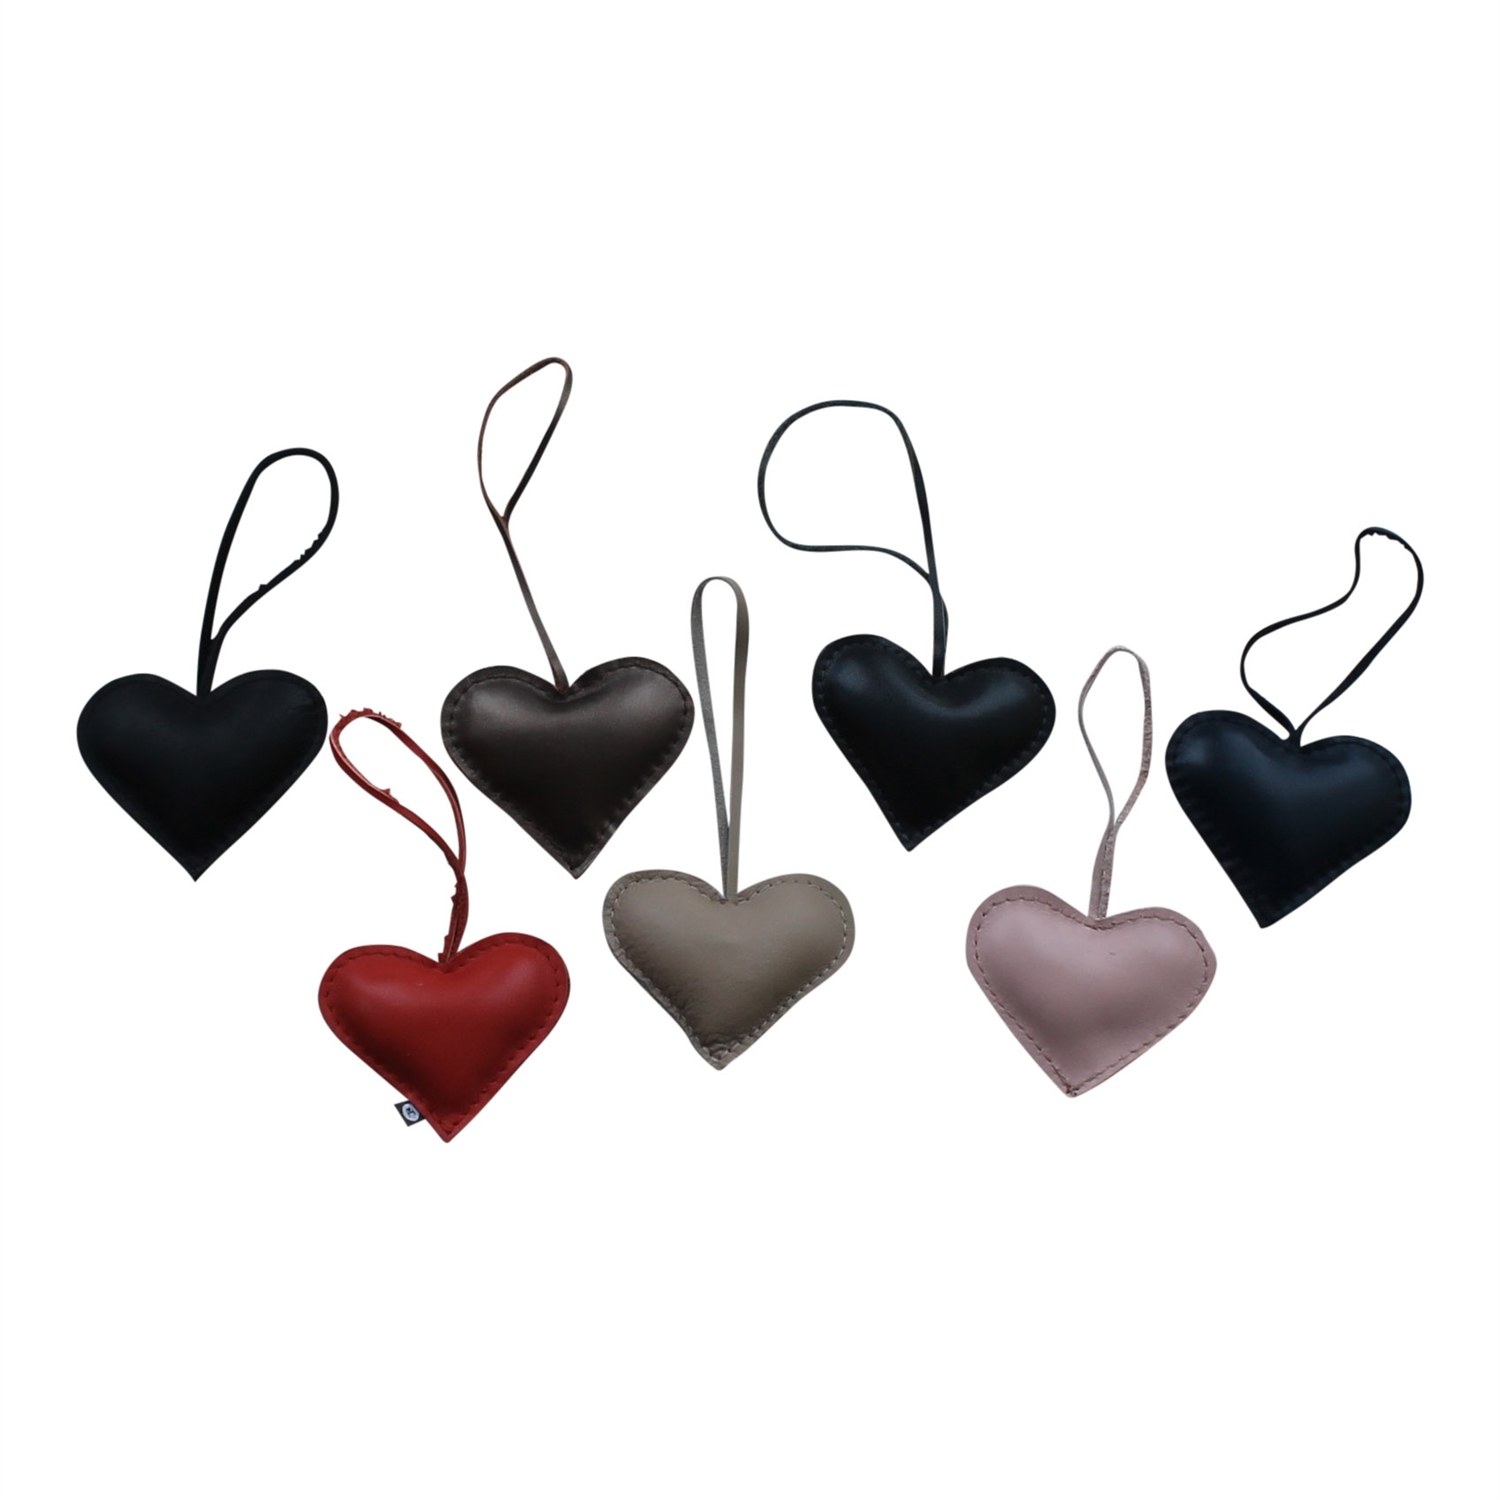 Hjerte læder som vedhæng til f.eks. taske, fra von - findes i flere